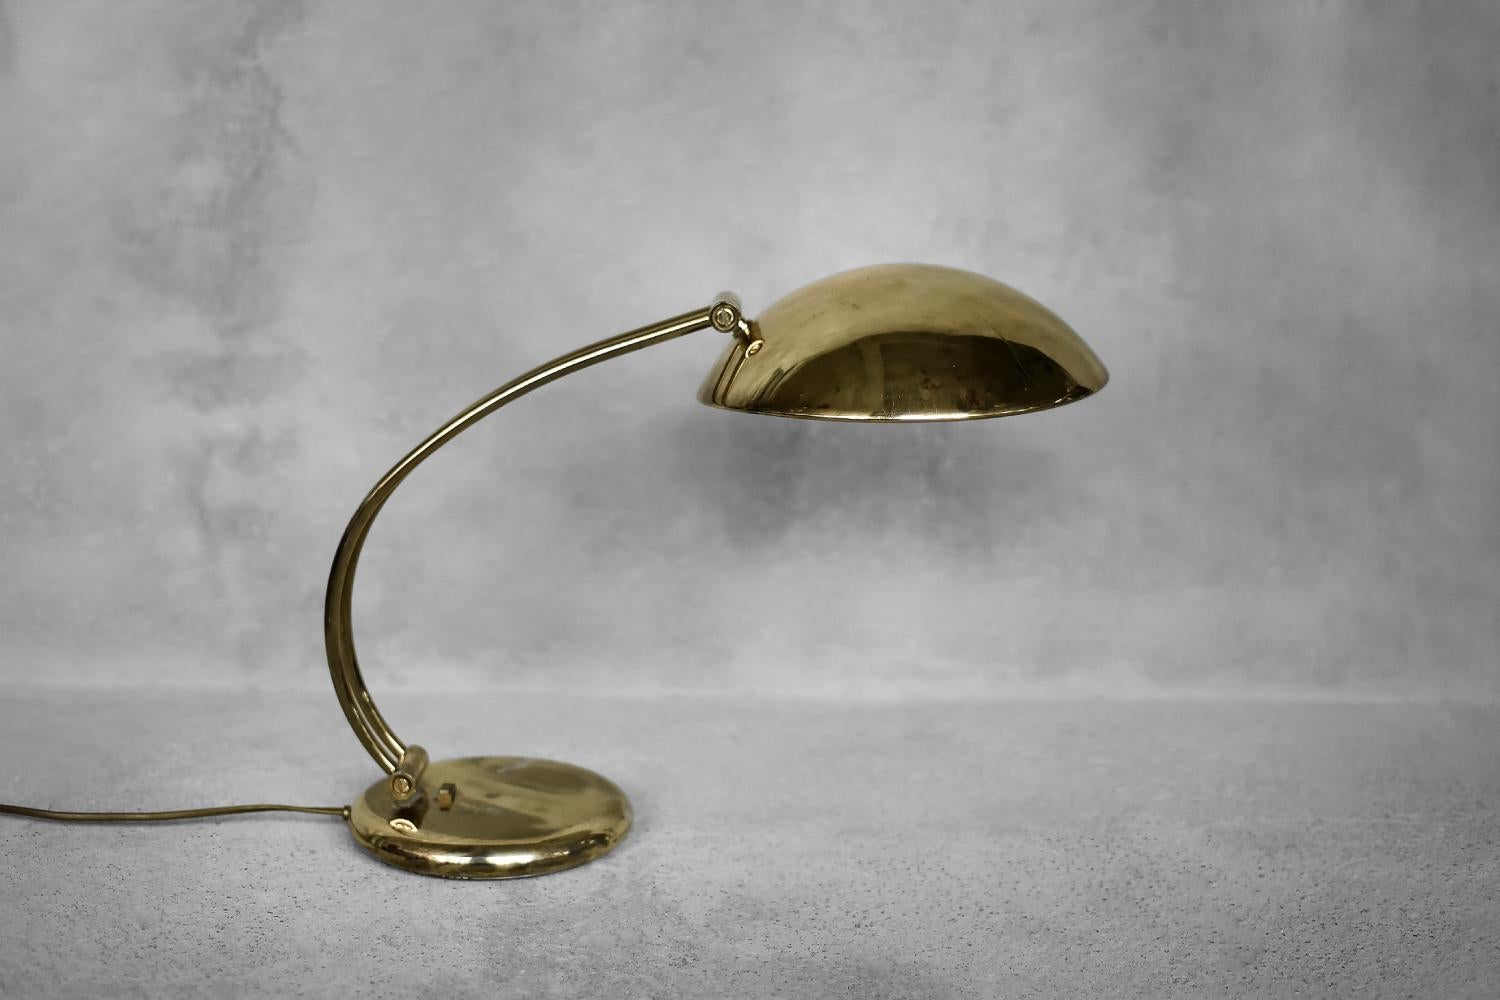 Cette élégante lampe de bureau dorée a été produite par le fabricant belge Massive dans les années 1970. La base ronde est associée à un grand abat-jour cylindrique fixé à un bras articulé. Le bras et l'abat-jour peuvent être réglés pour obtenir un